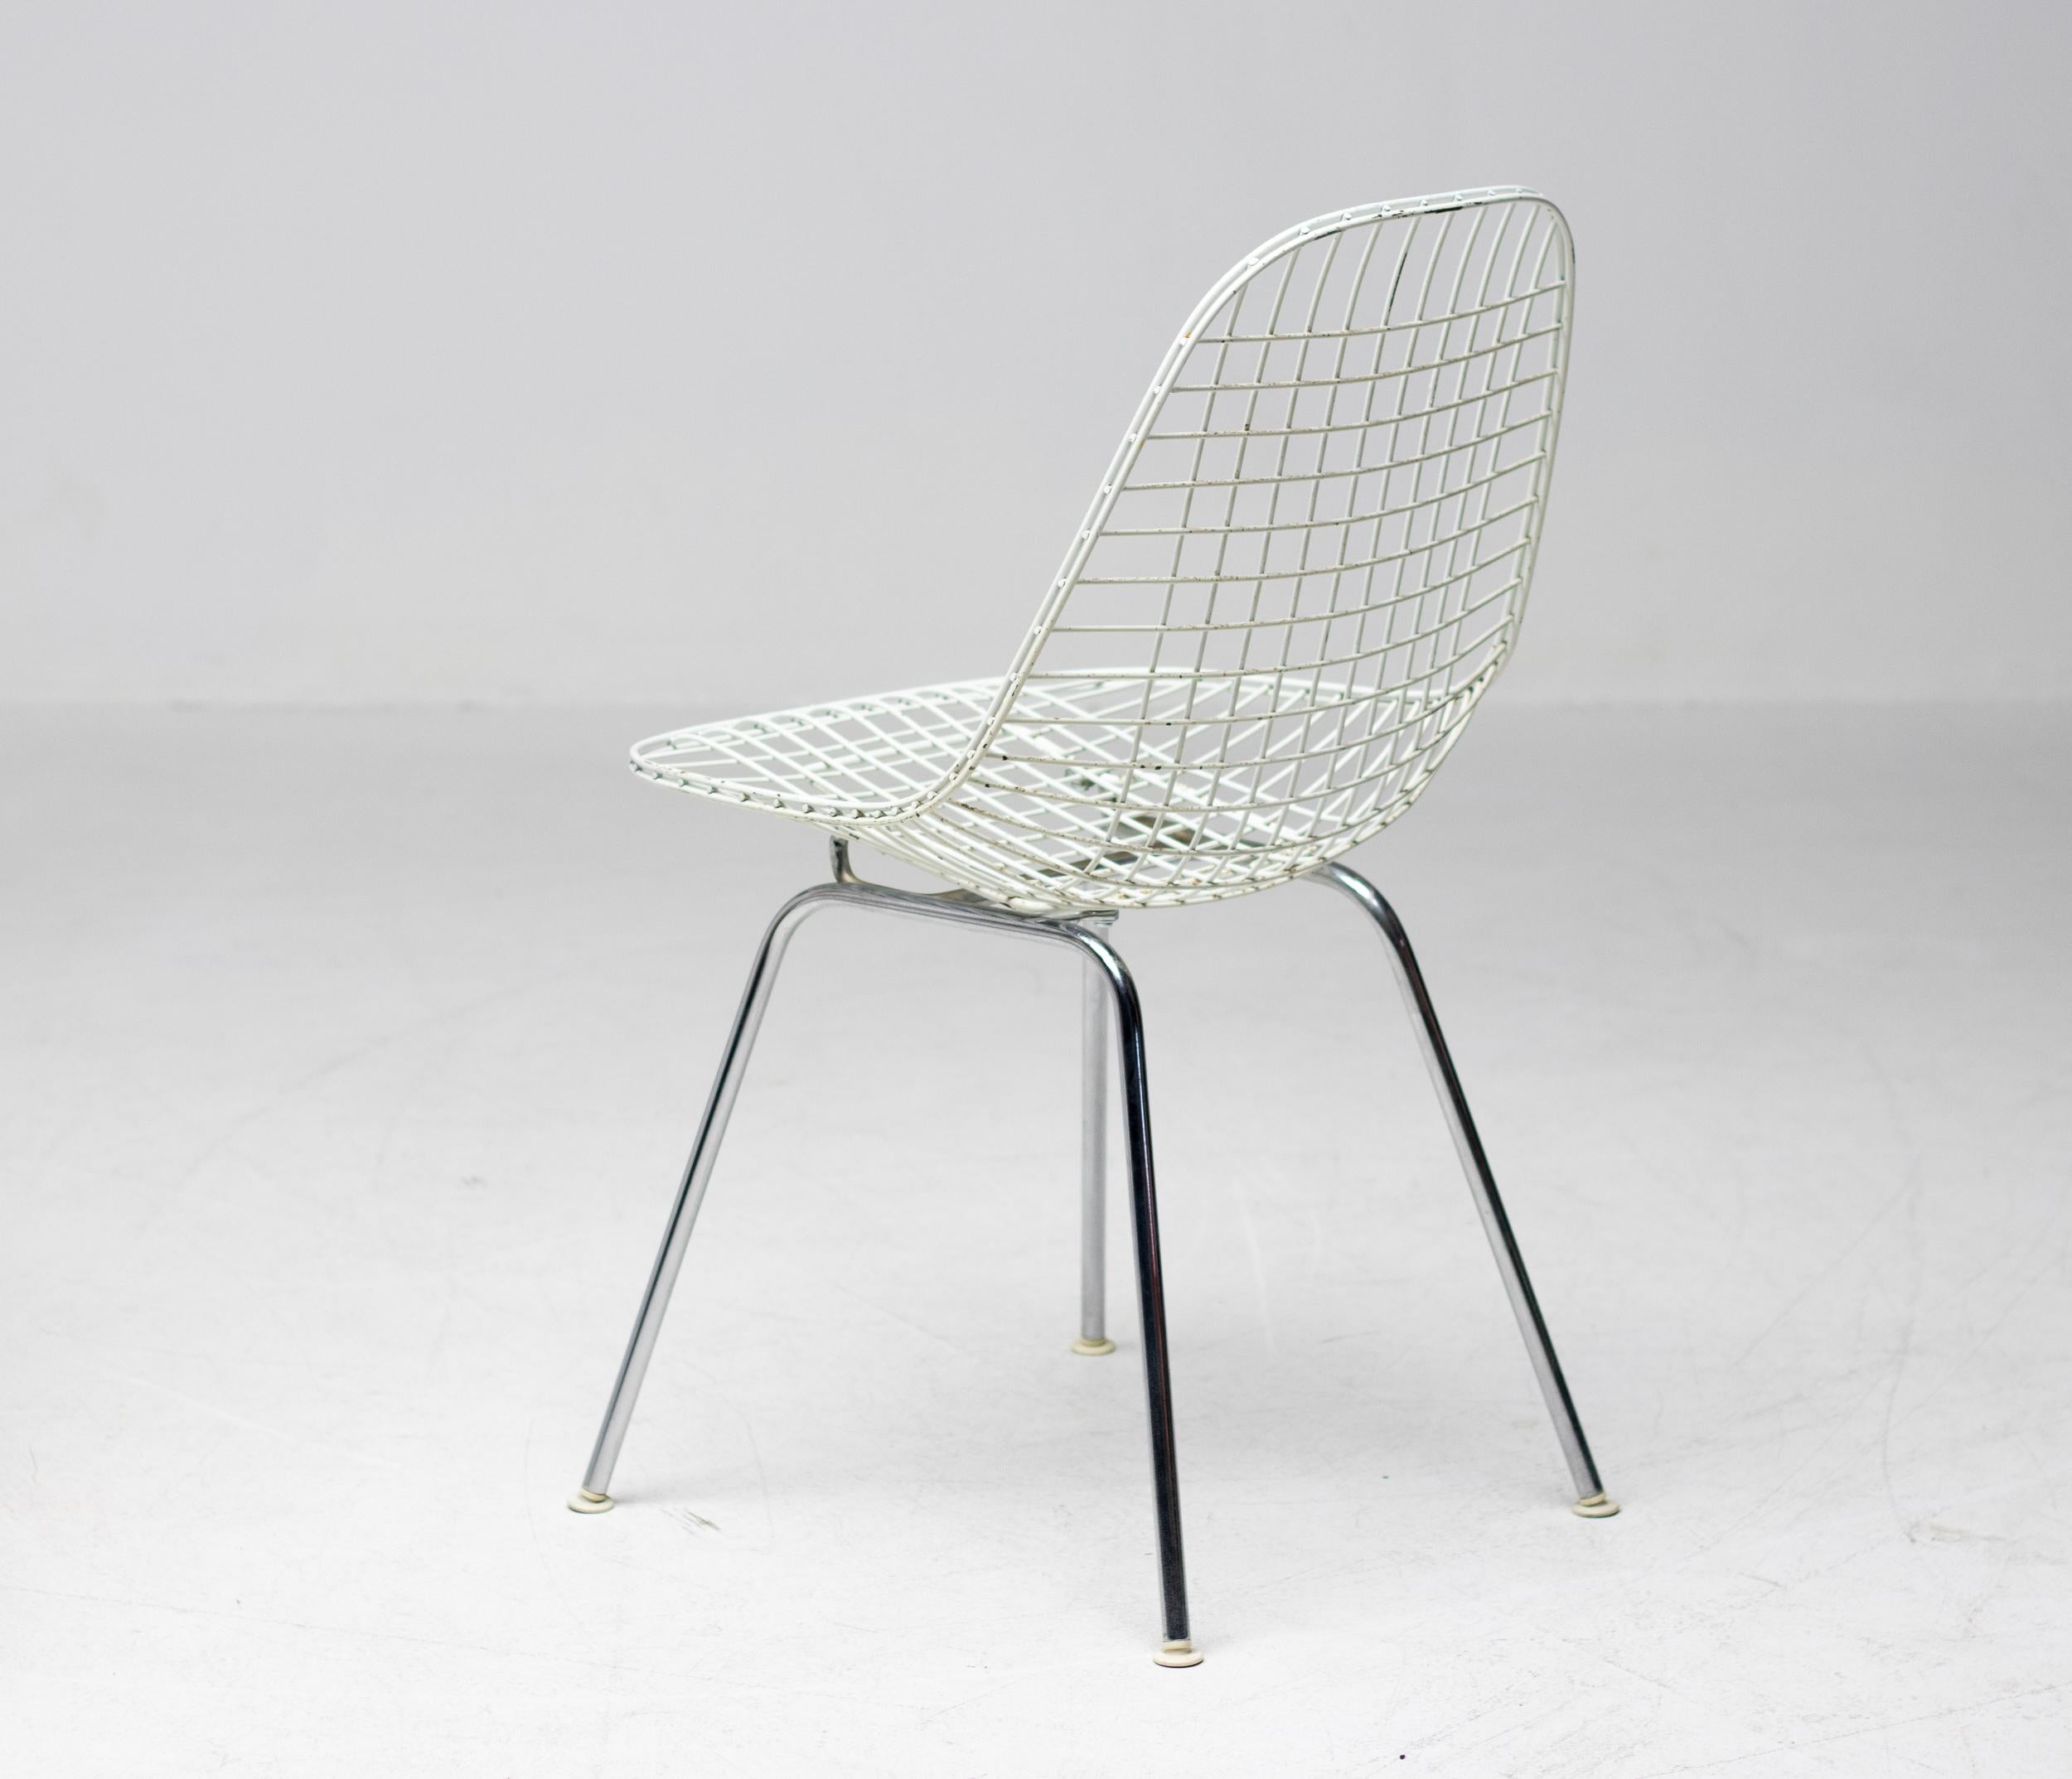 Un ensemble de quatre chaises Eames DKR pour Herman Miller. Le cadre de ces chaises est constitué d'un fil d'acier soudé, revêtu d'une peinture en poudre blanche sur une base à 4 pieds en acier chromé. Les revêtements du pad du bikini sont les